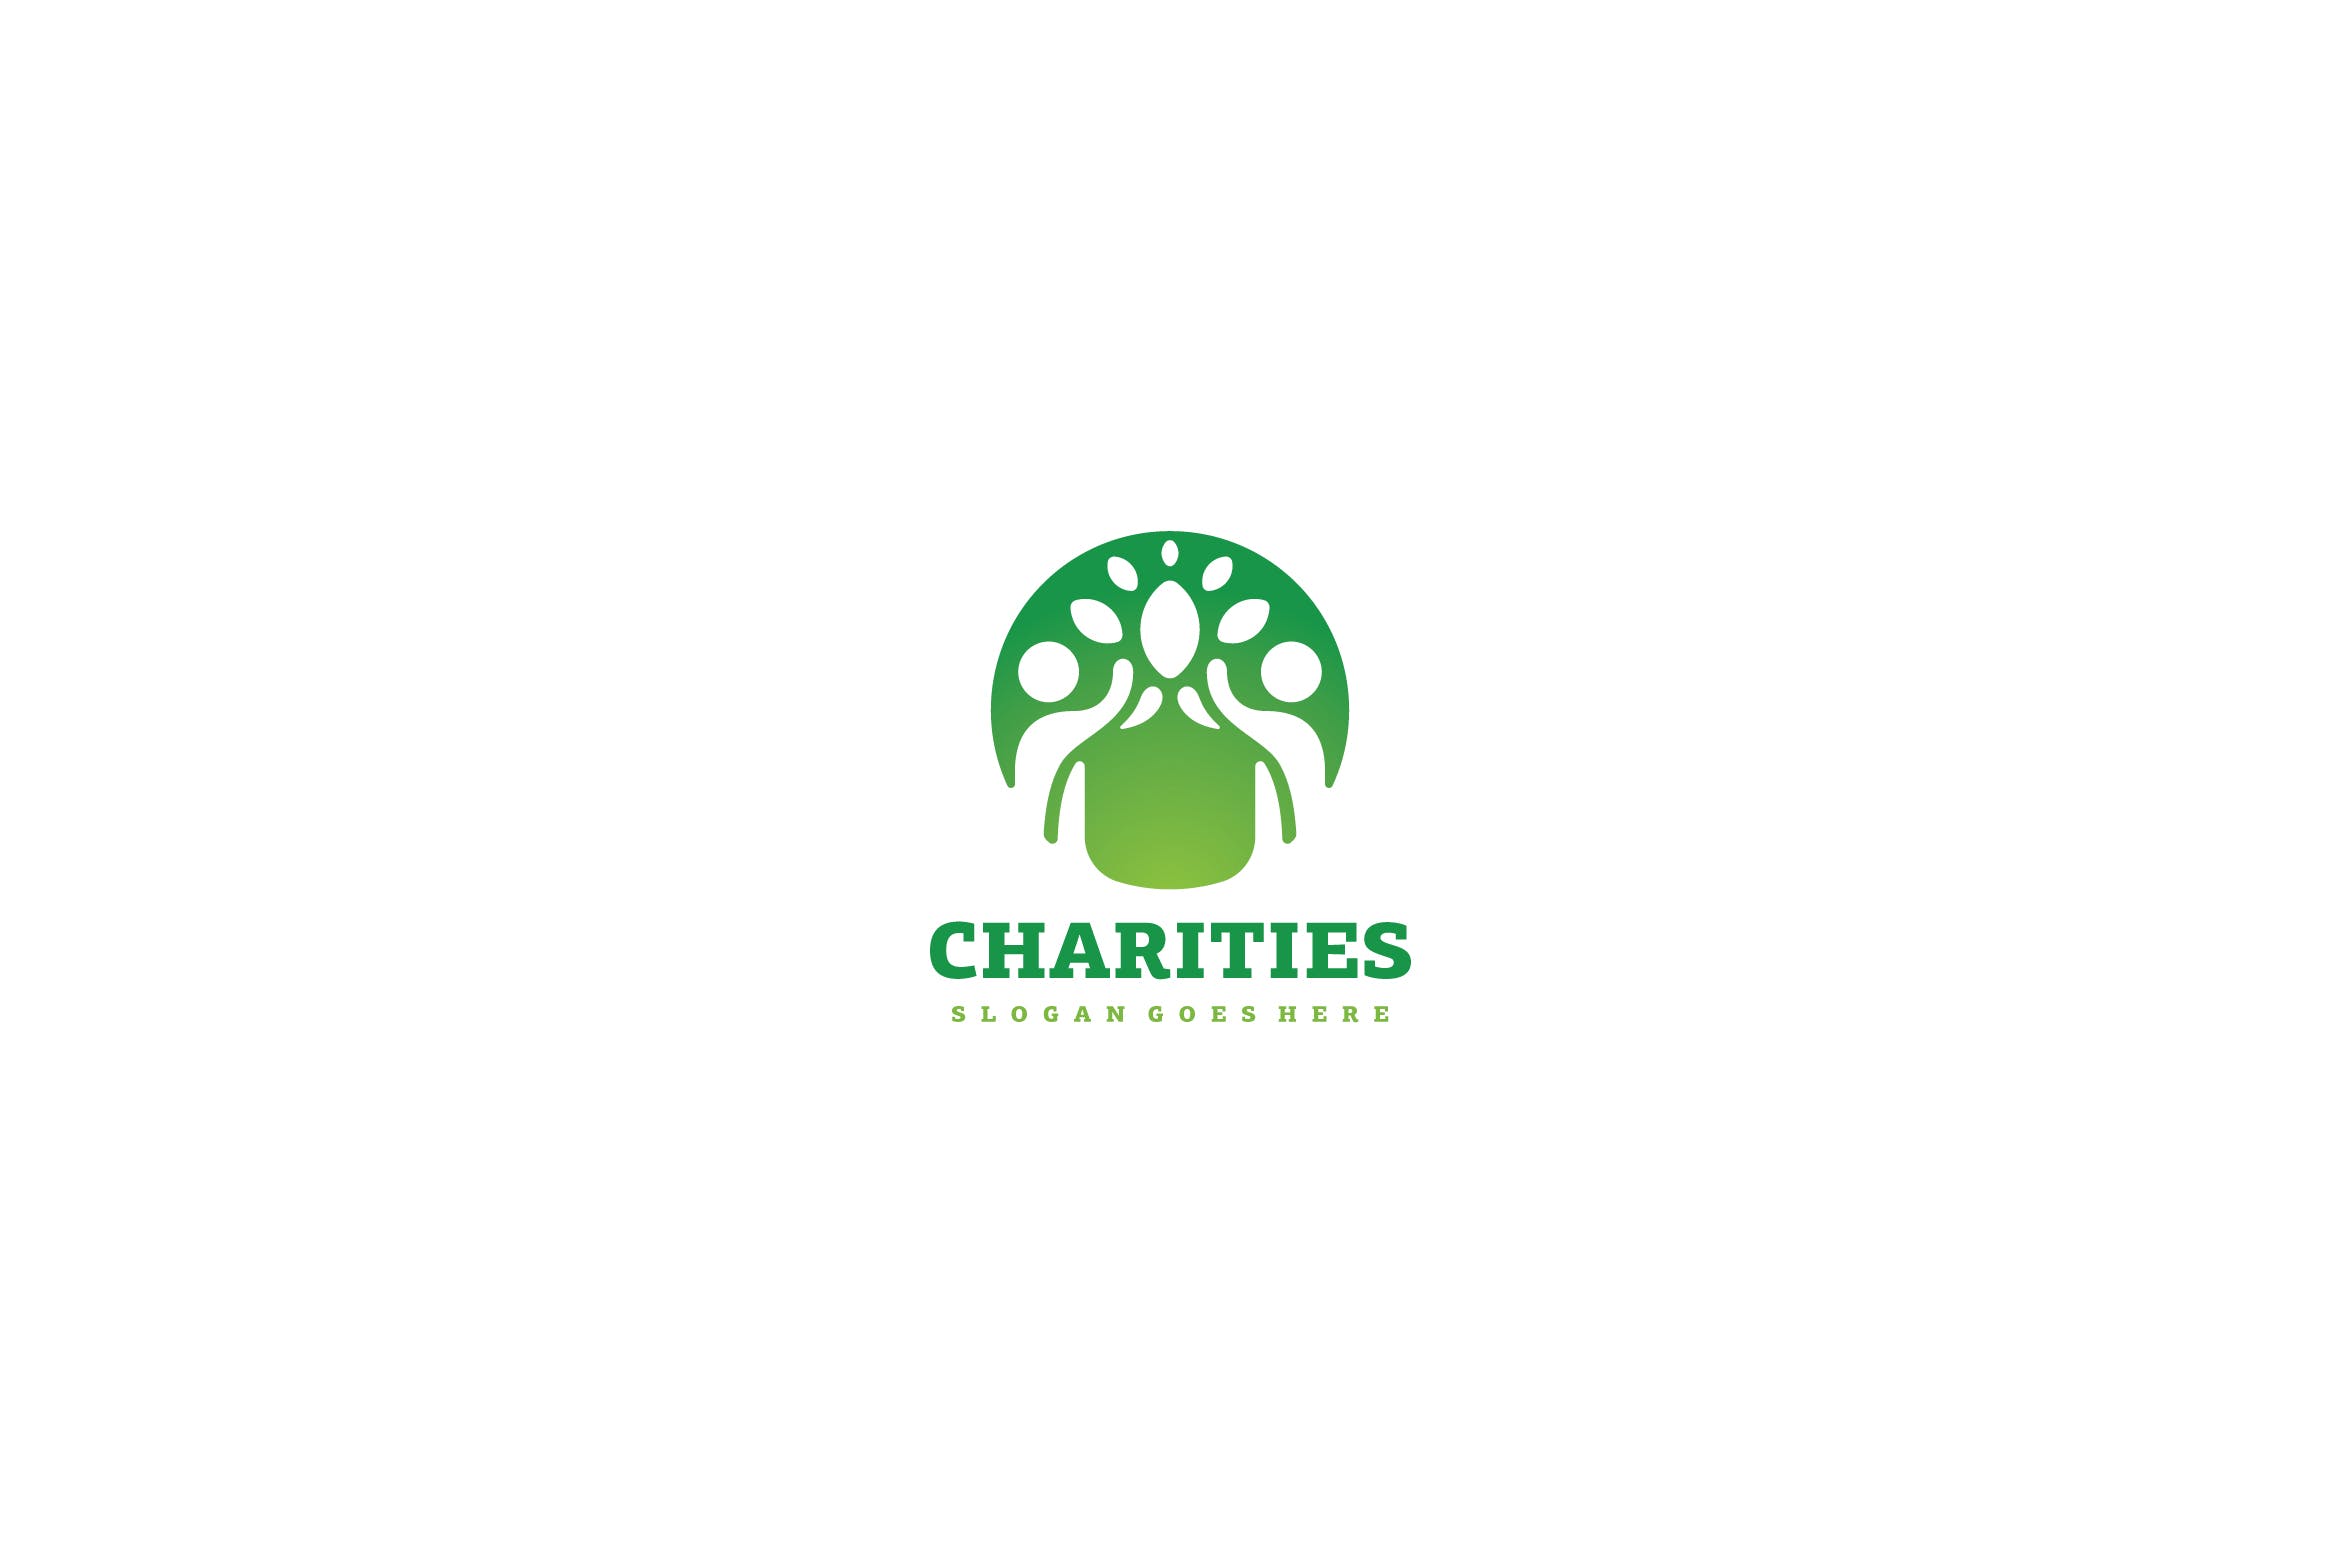 生态慈善行业Logo设计第一素材精选模板 Eco Charities Logo插图